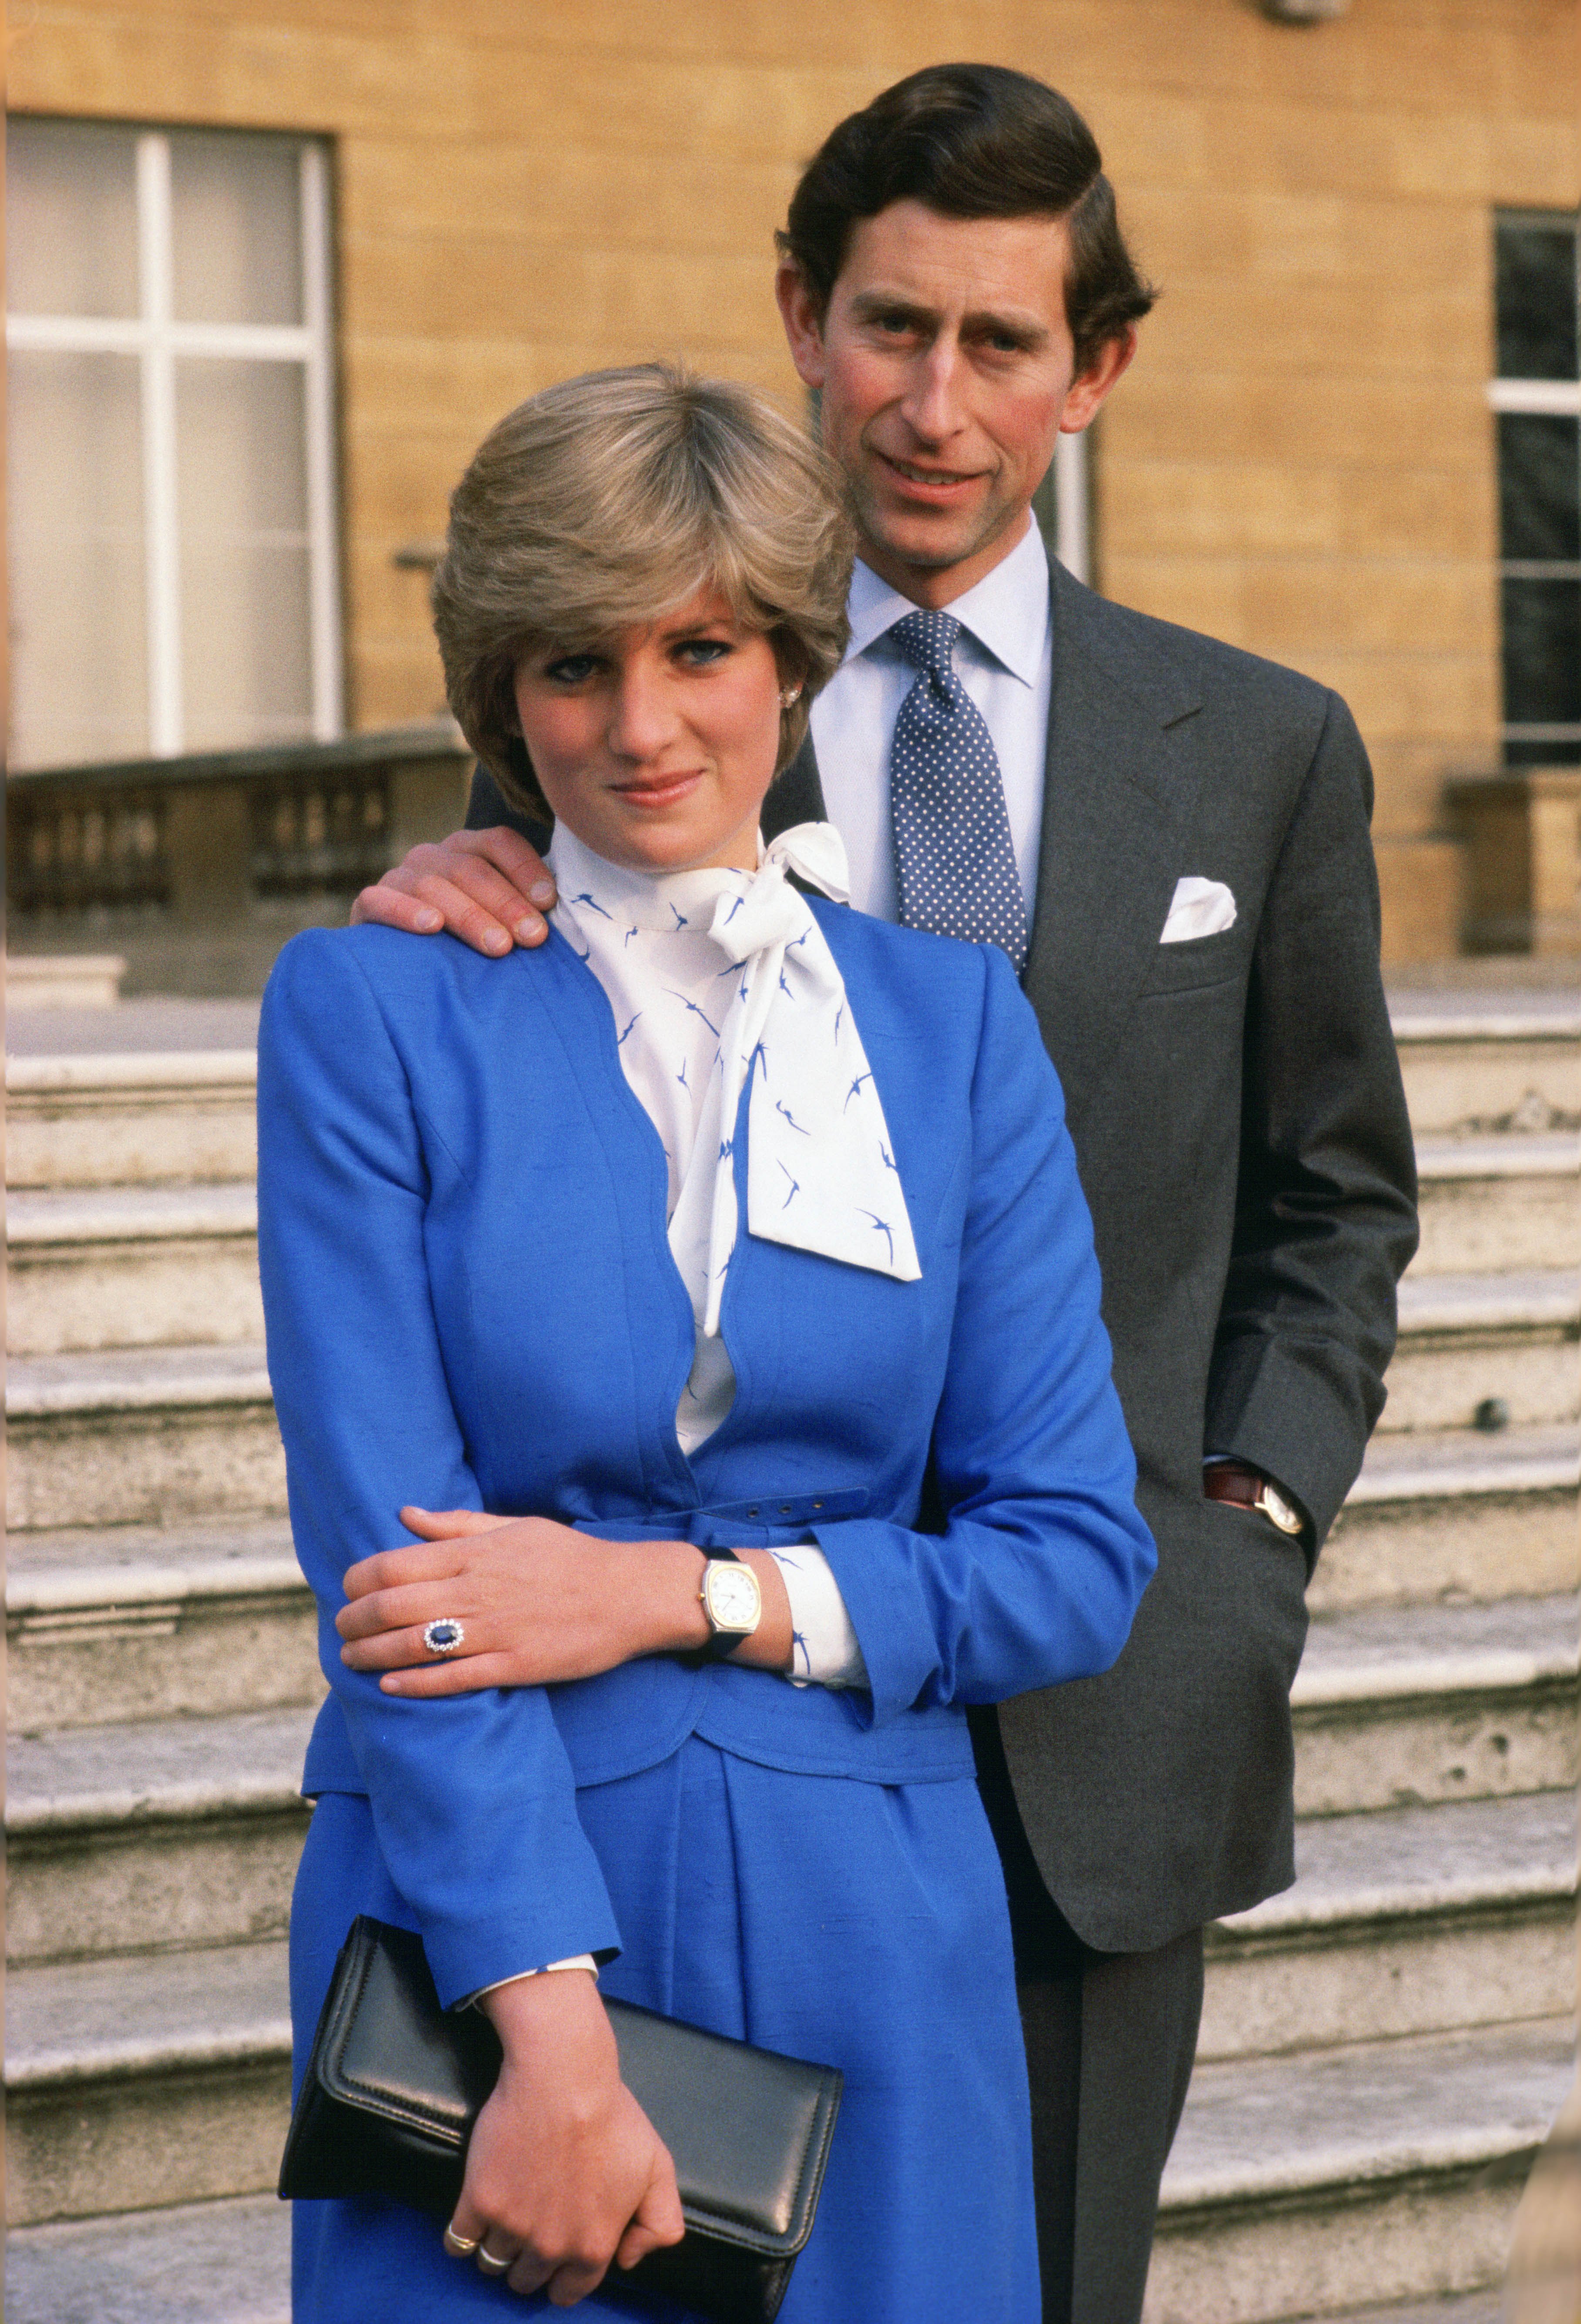 Prinzessin Diana und Prinz Charles posieren nach der Bekanntgabe ihrer Verlobung auf dem Gelände des Buckingham Palace am 24. Februar 1981. | Quelle: Getty Images